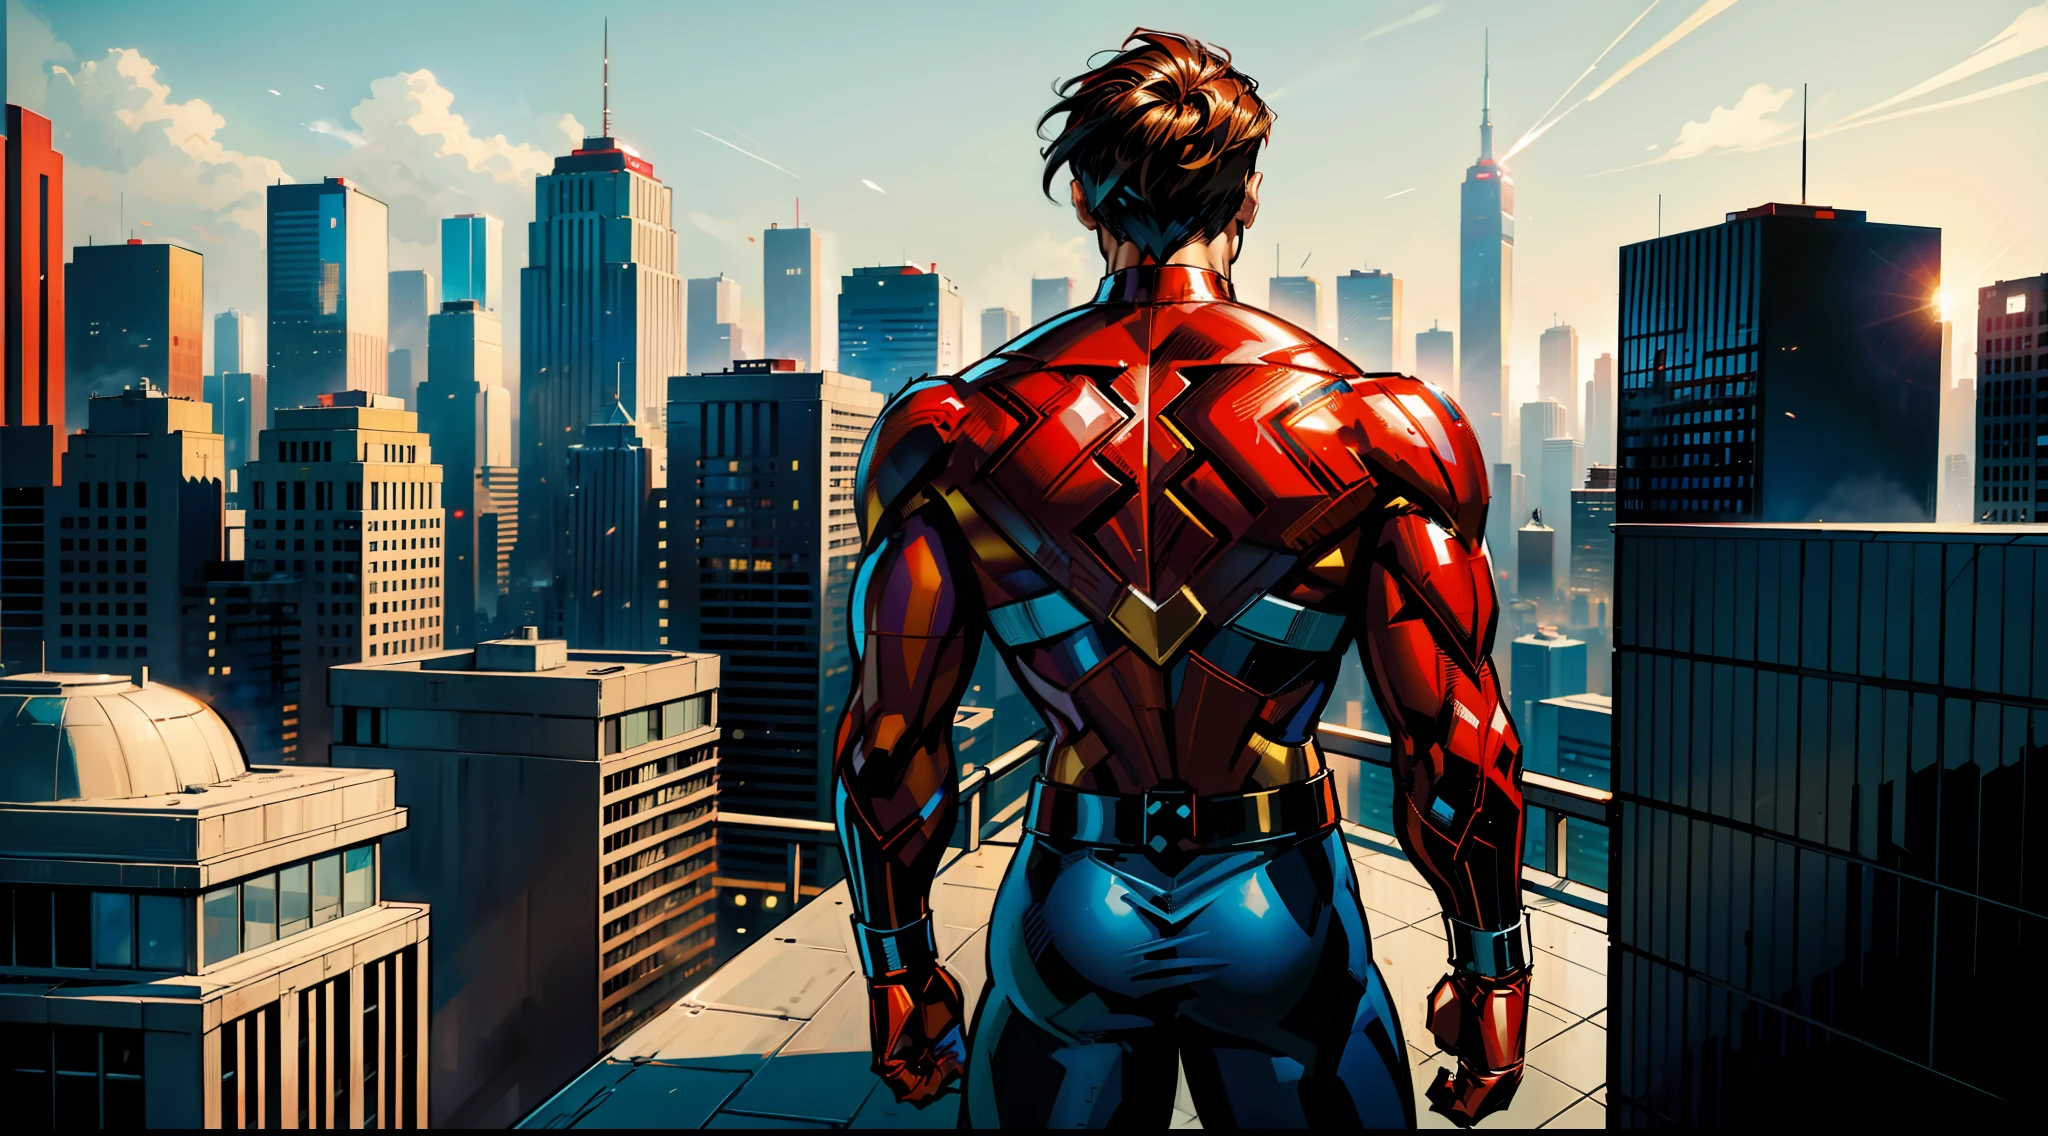 男人, 超級英雄, 身穿紅白超級英雄服裝, 他的服裝中最少的金色細節, 從後面看, 楼顶, 以現代城市為背景, 透過史丹李, 通過吉姆李, 喬·班尼特, 漫畫風格, modern 漫畫風格.